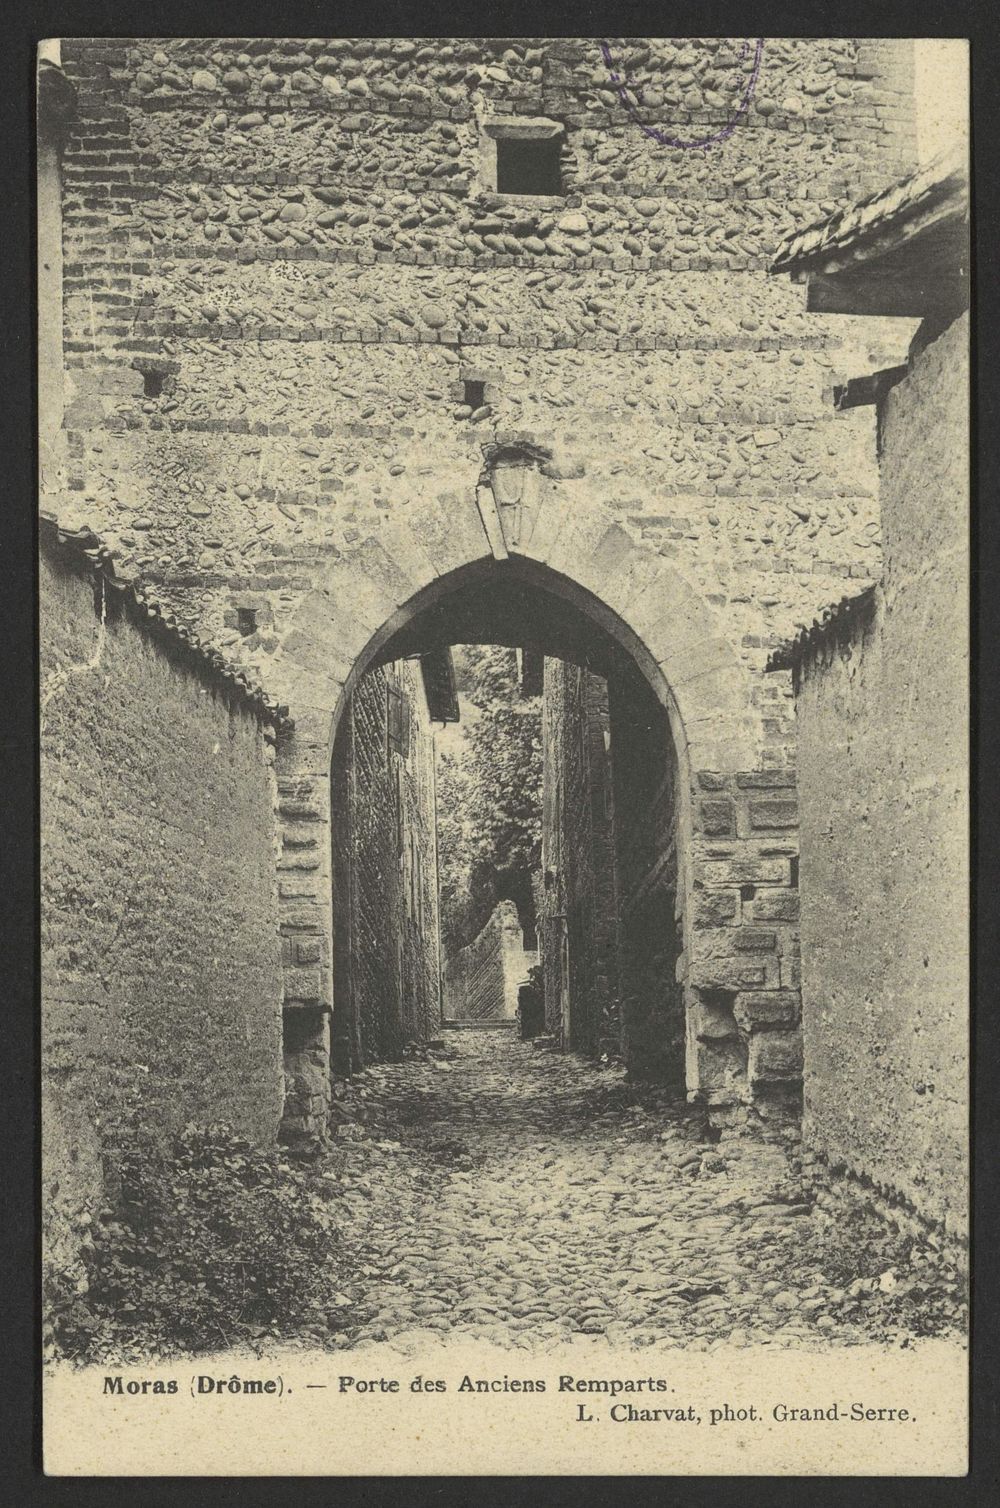 Moras (Drôme) - Porte des anciens remparts